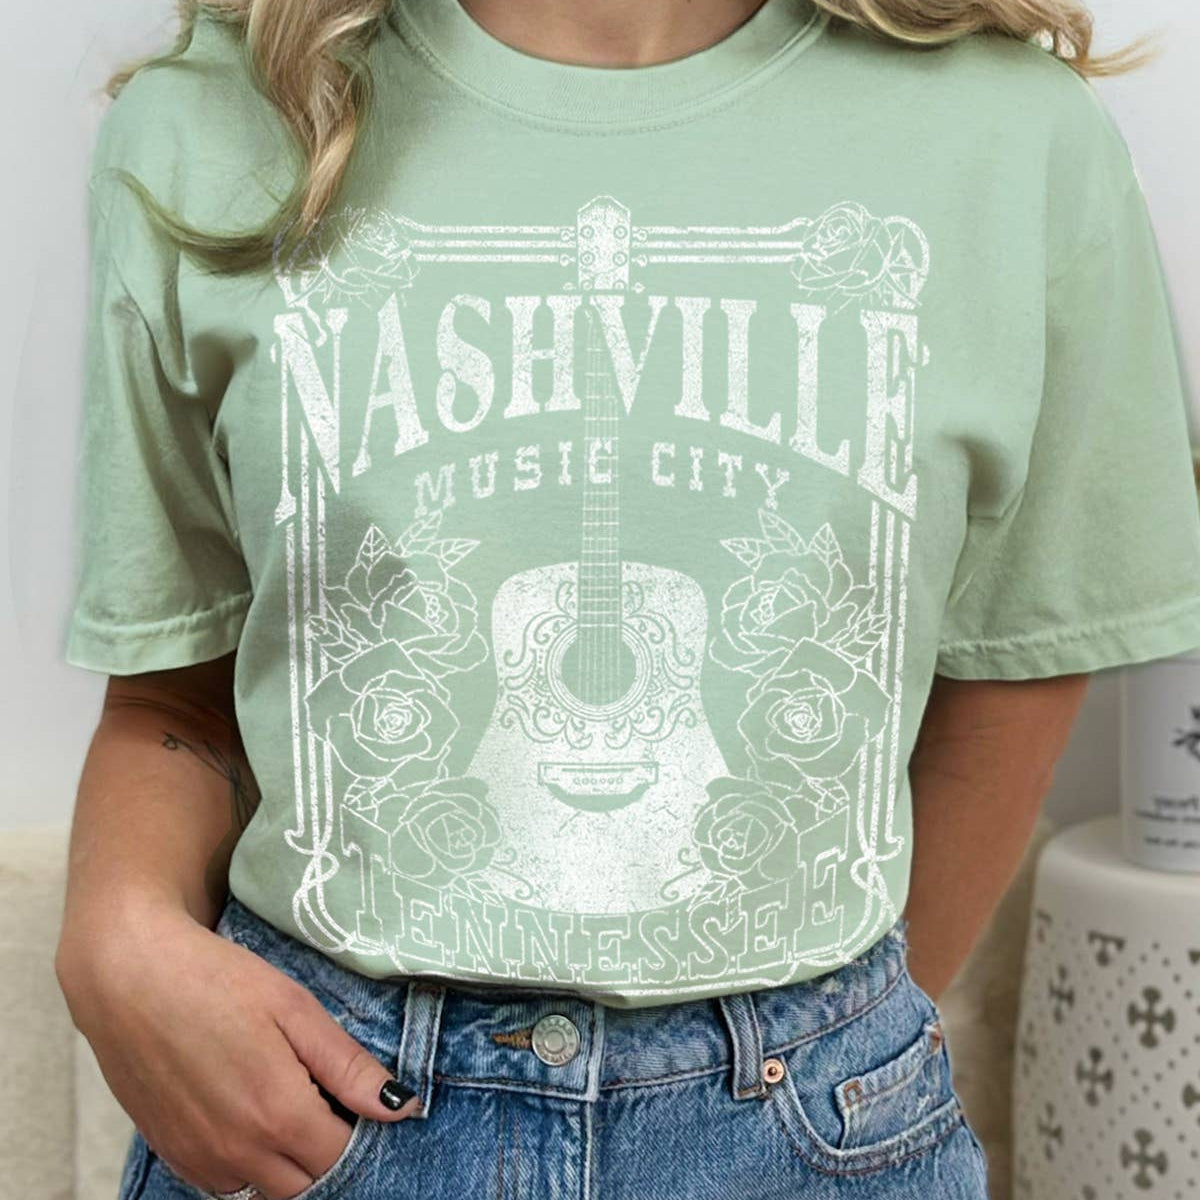 Nashville Music City- Tee